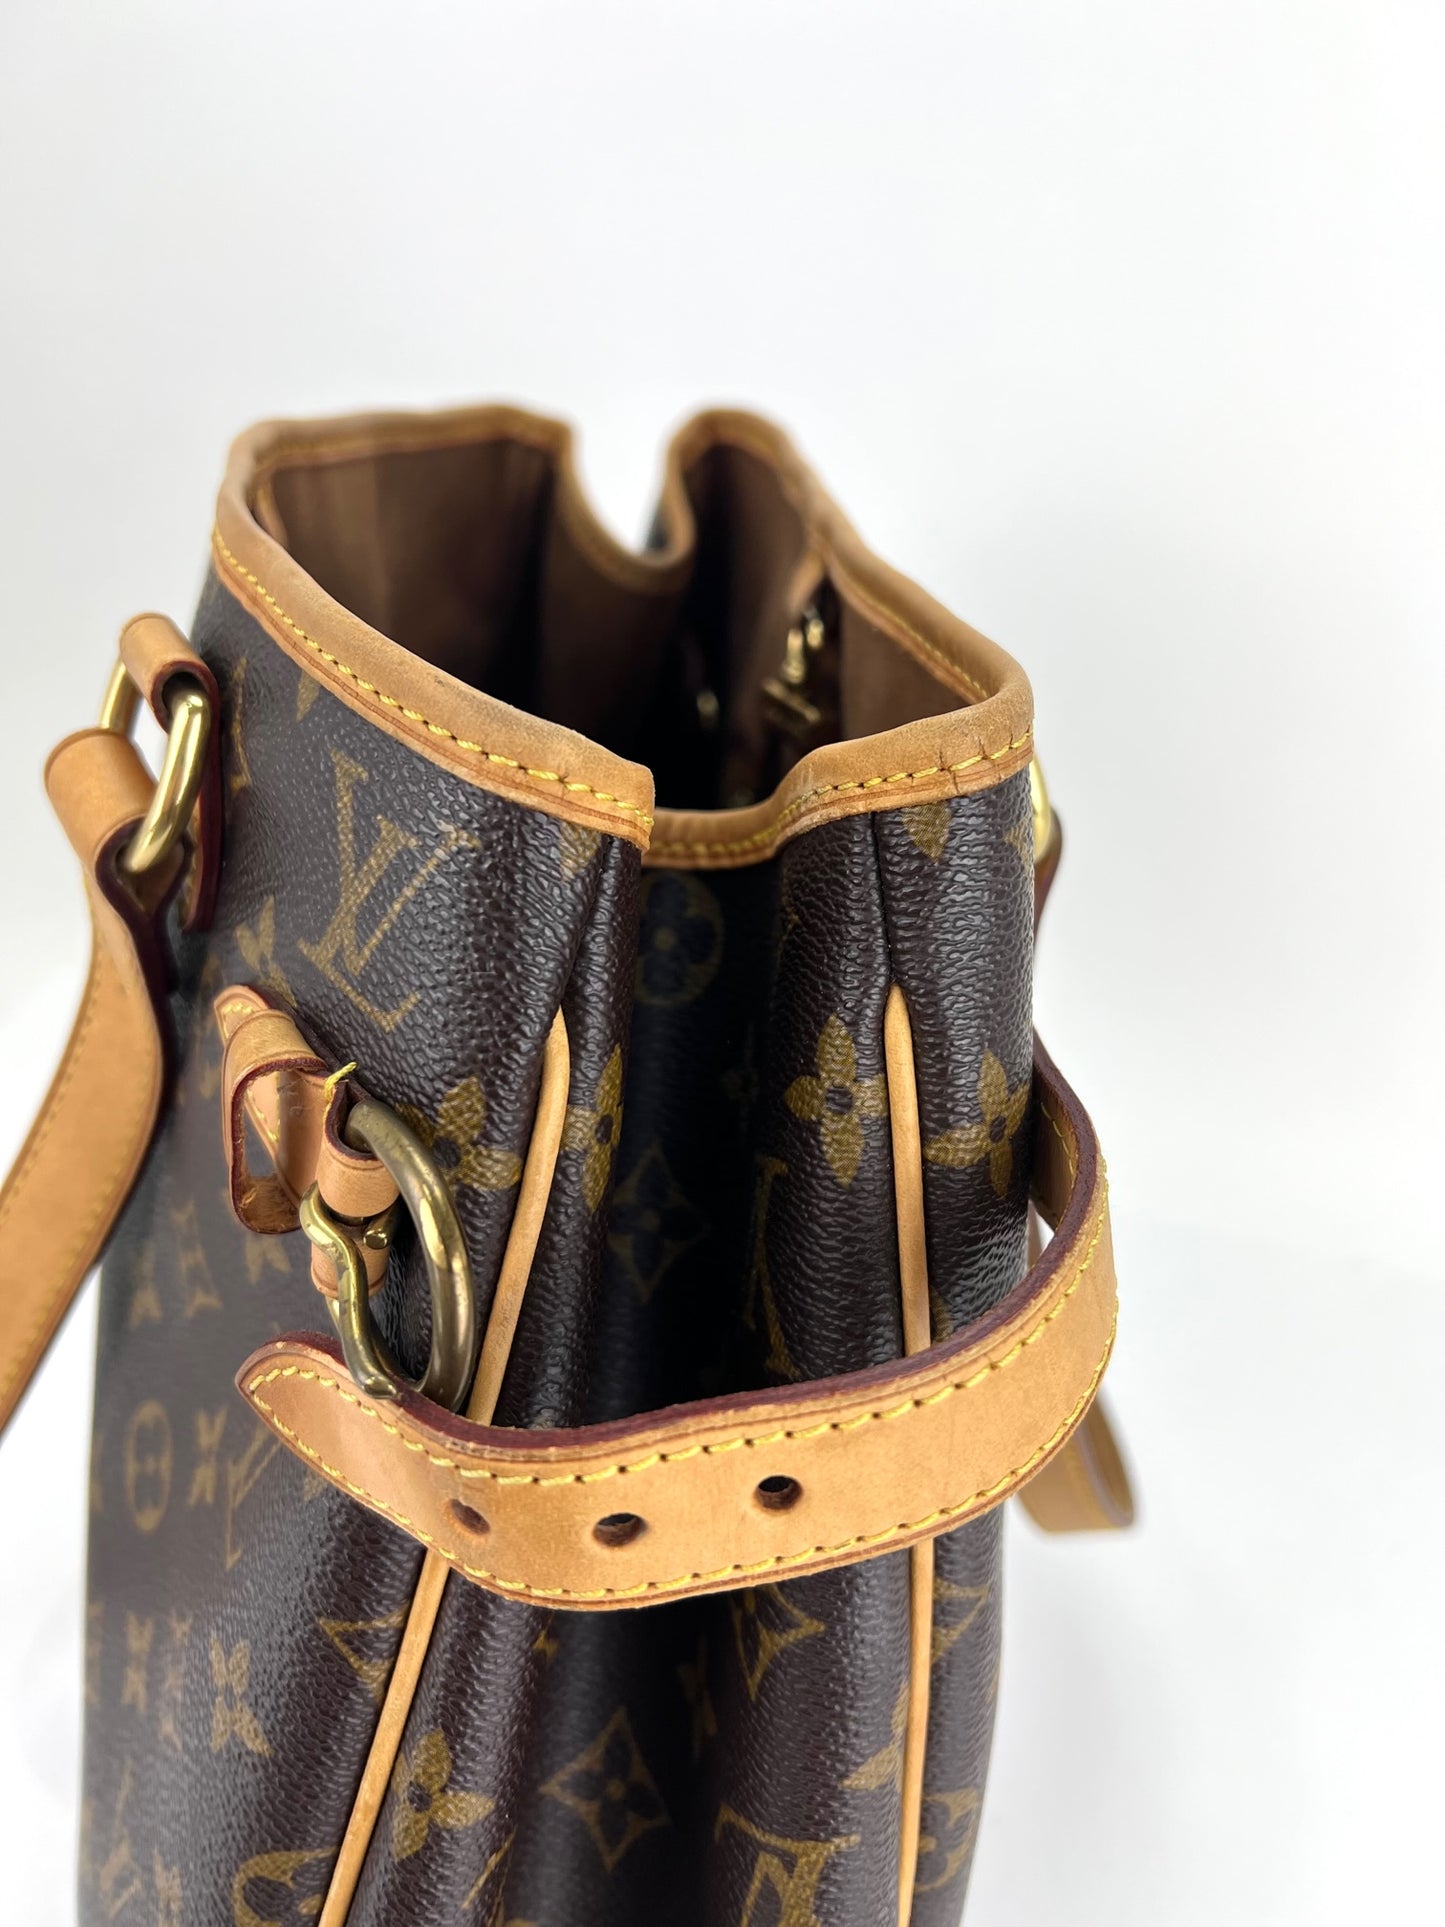 Louis Vuitton Louis Vuitton Batignolles Bags & Handbags for Women